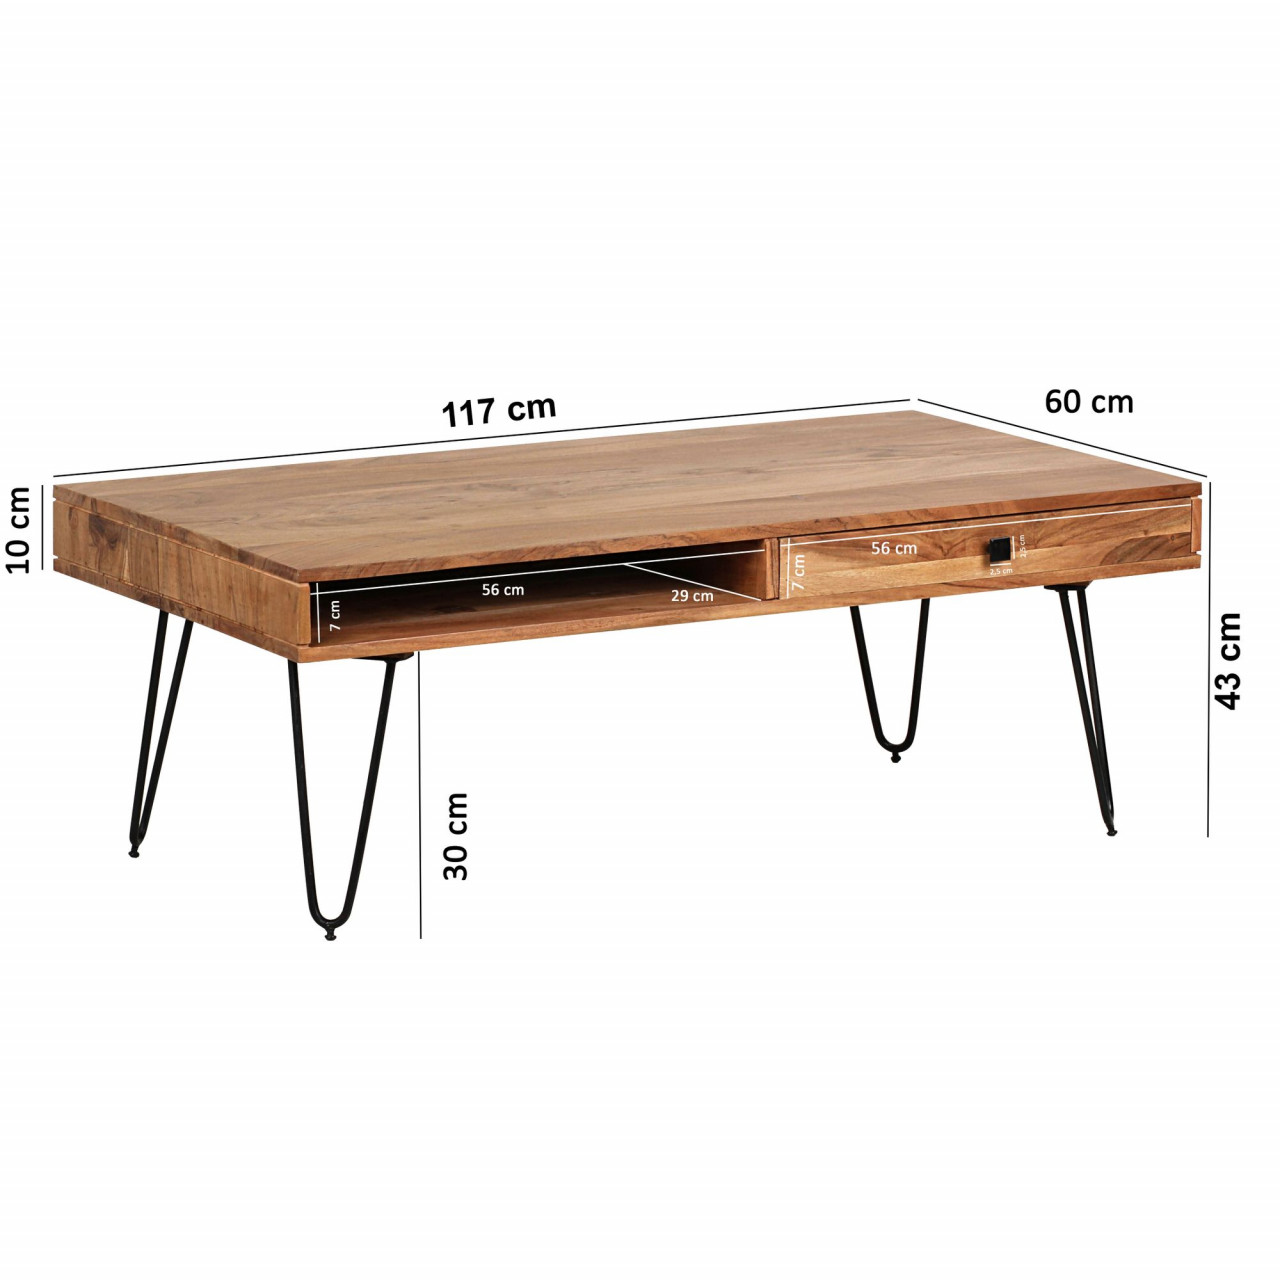 Couchtisch BAGLI Massiv-Holz Akazie 110 cm breit Wohnzimmer-Tisch Design Metallbeine Landhaus-Stil Beistelltisch von Wohnling